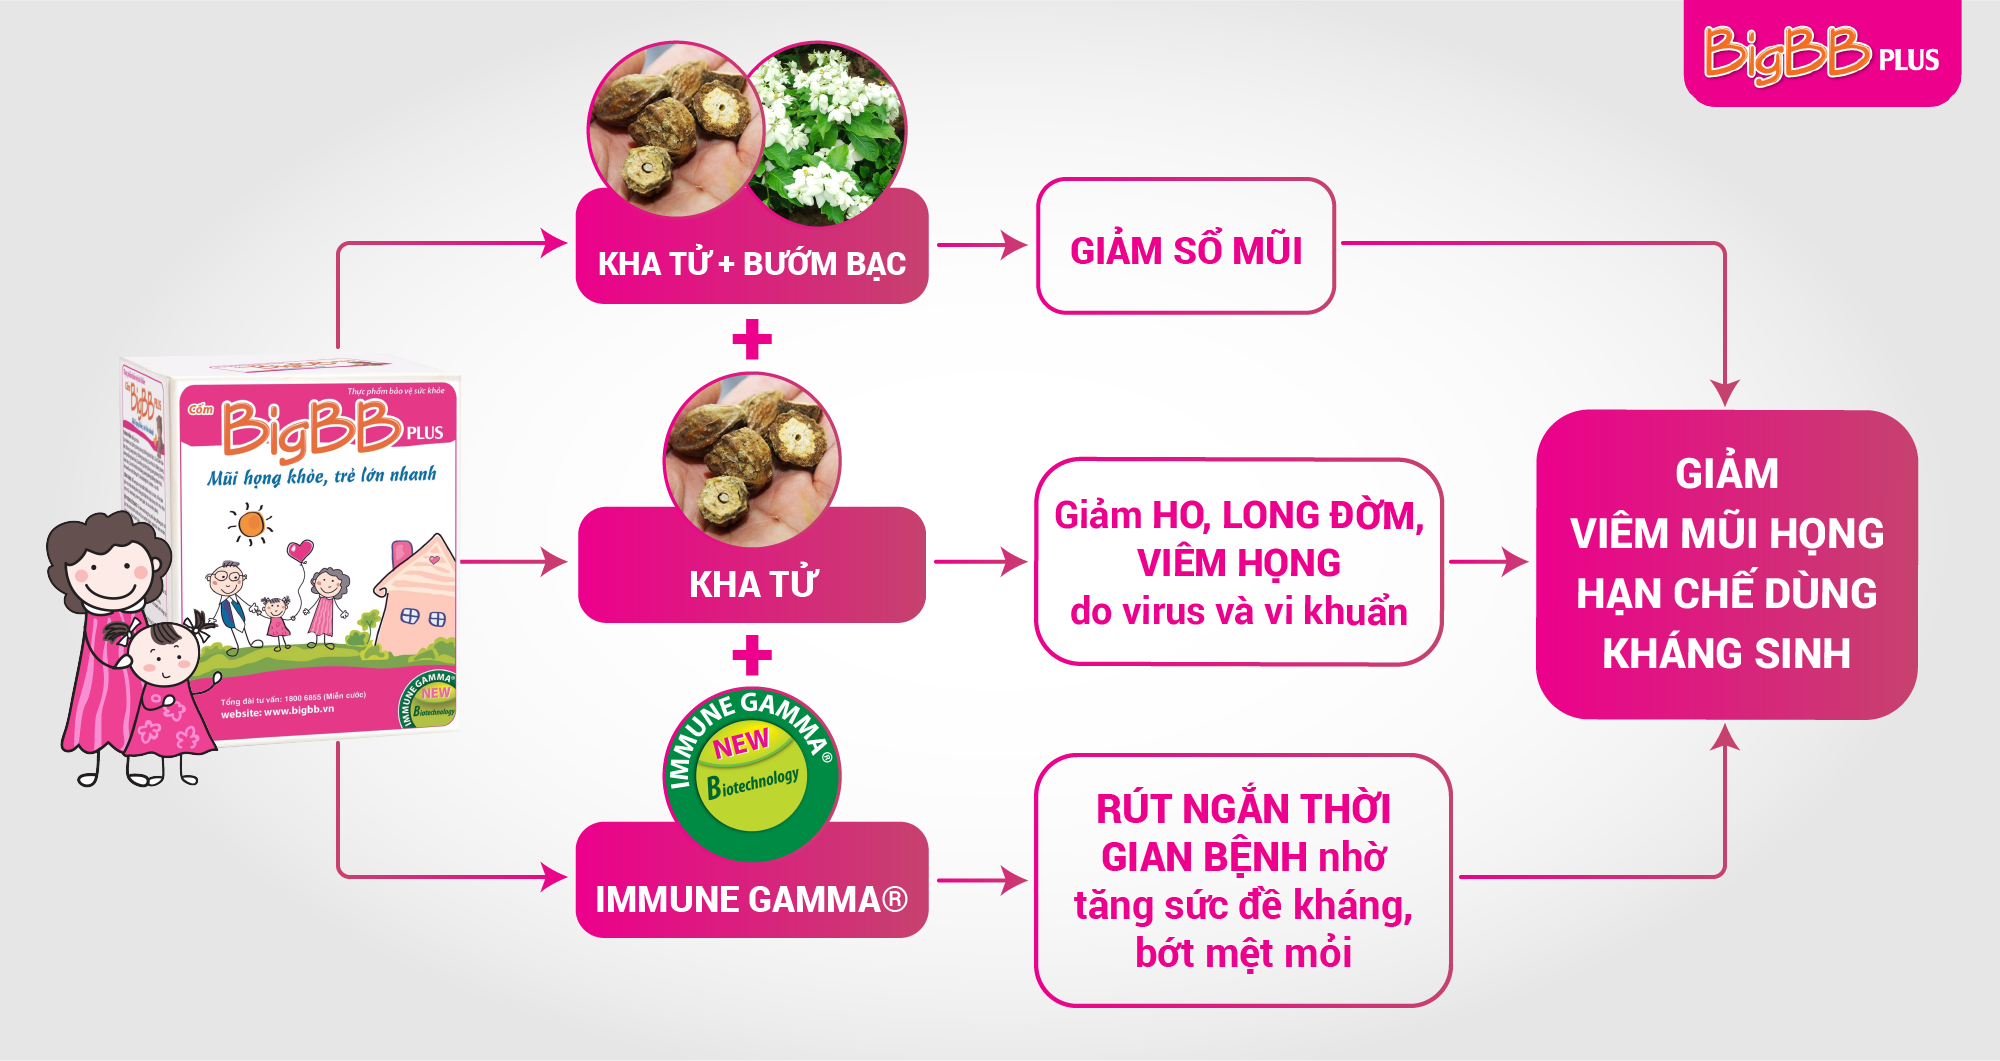 Quả Kha tử được PGS.TS Nguyễn Thị Ngọc Dinh đánh giá là “đầu bảng” trị viêm mũi họng cho trẻ (Nguồn: Internet)